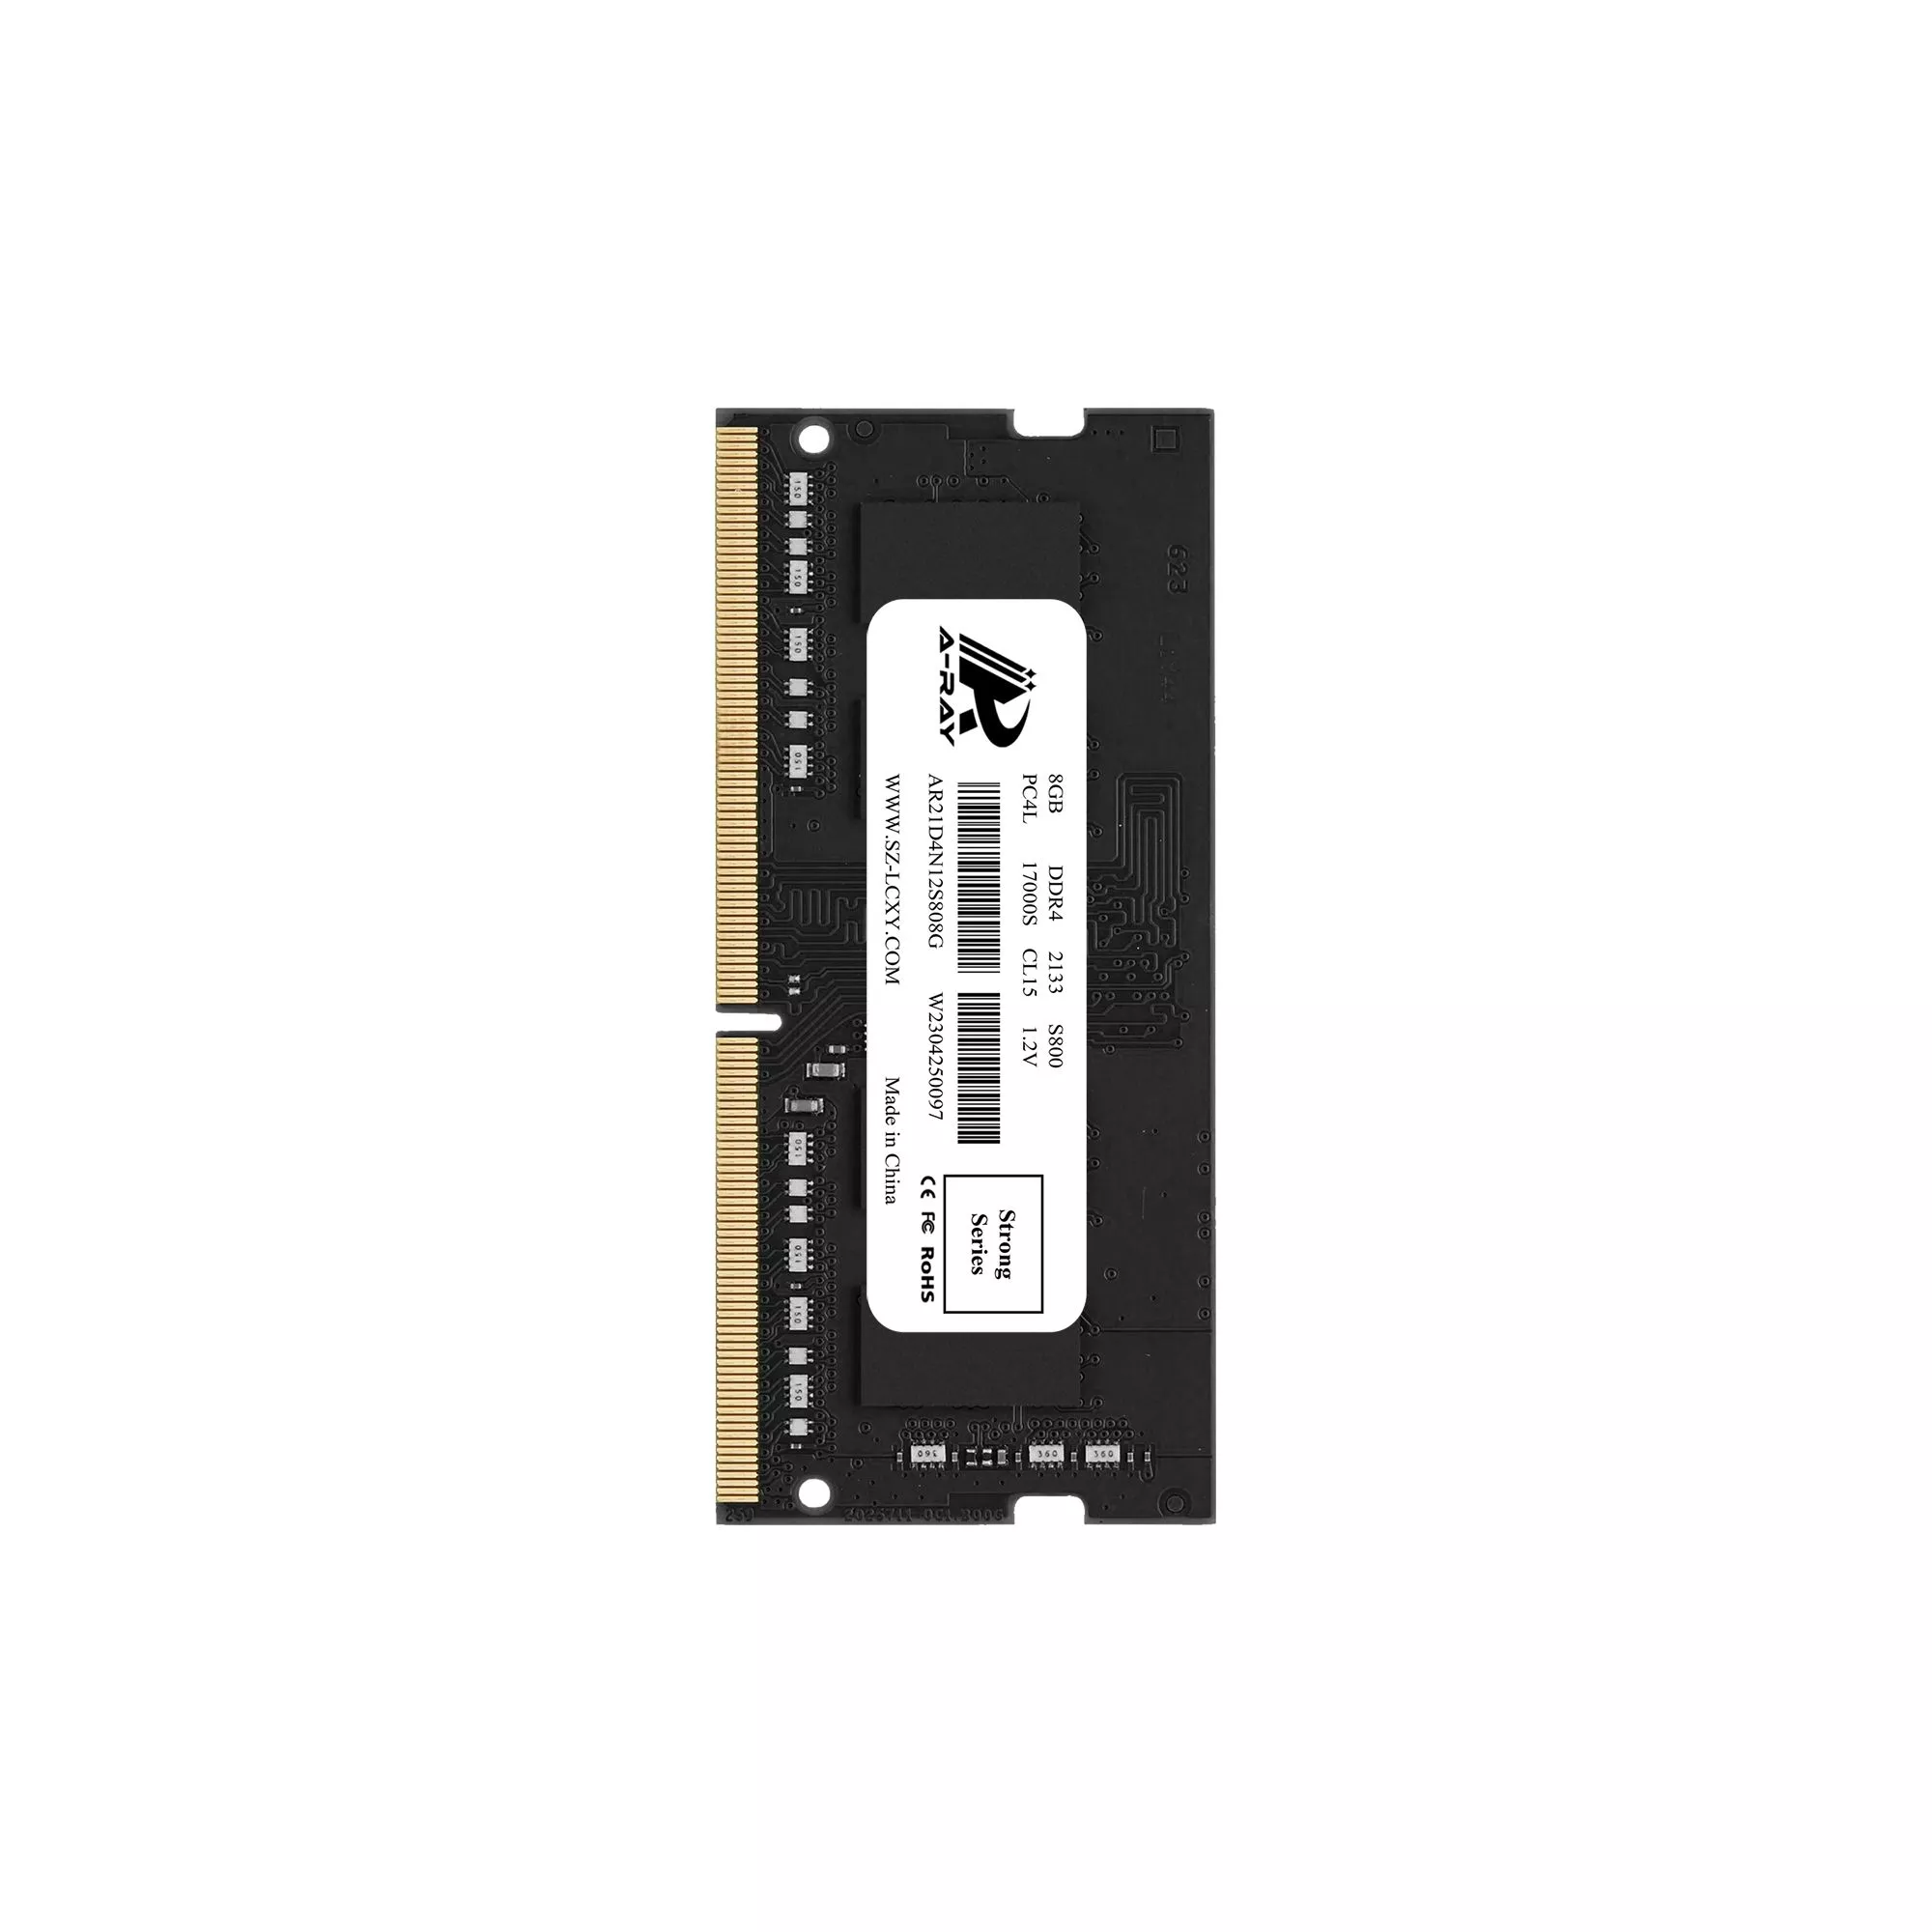 Bộ nhớ trong Ram A-Ray 8GB DDR4 Bus 2133 Mhz Laptop S800 17000 MB/s P/N: AR21D4N12S808G